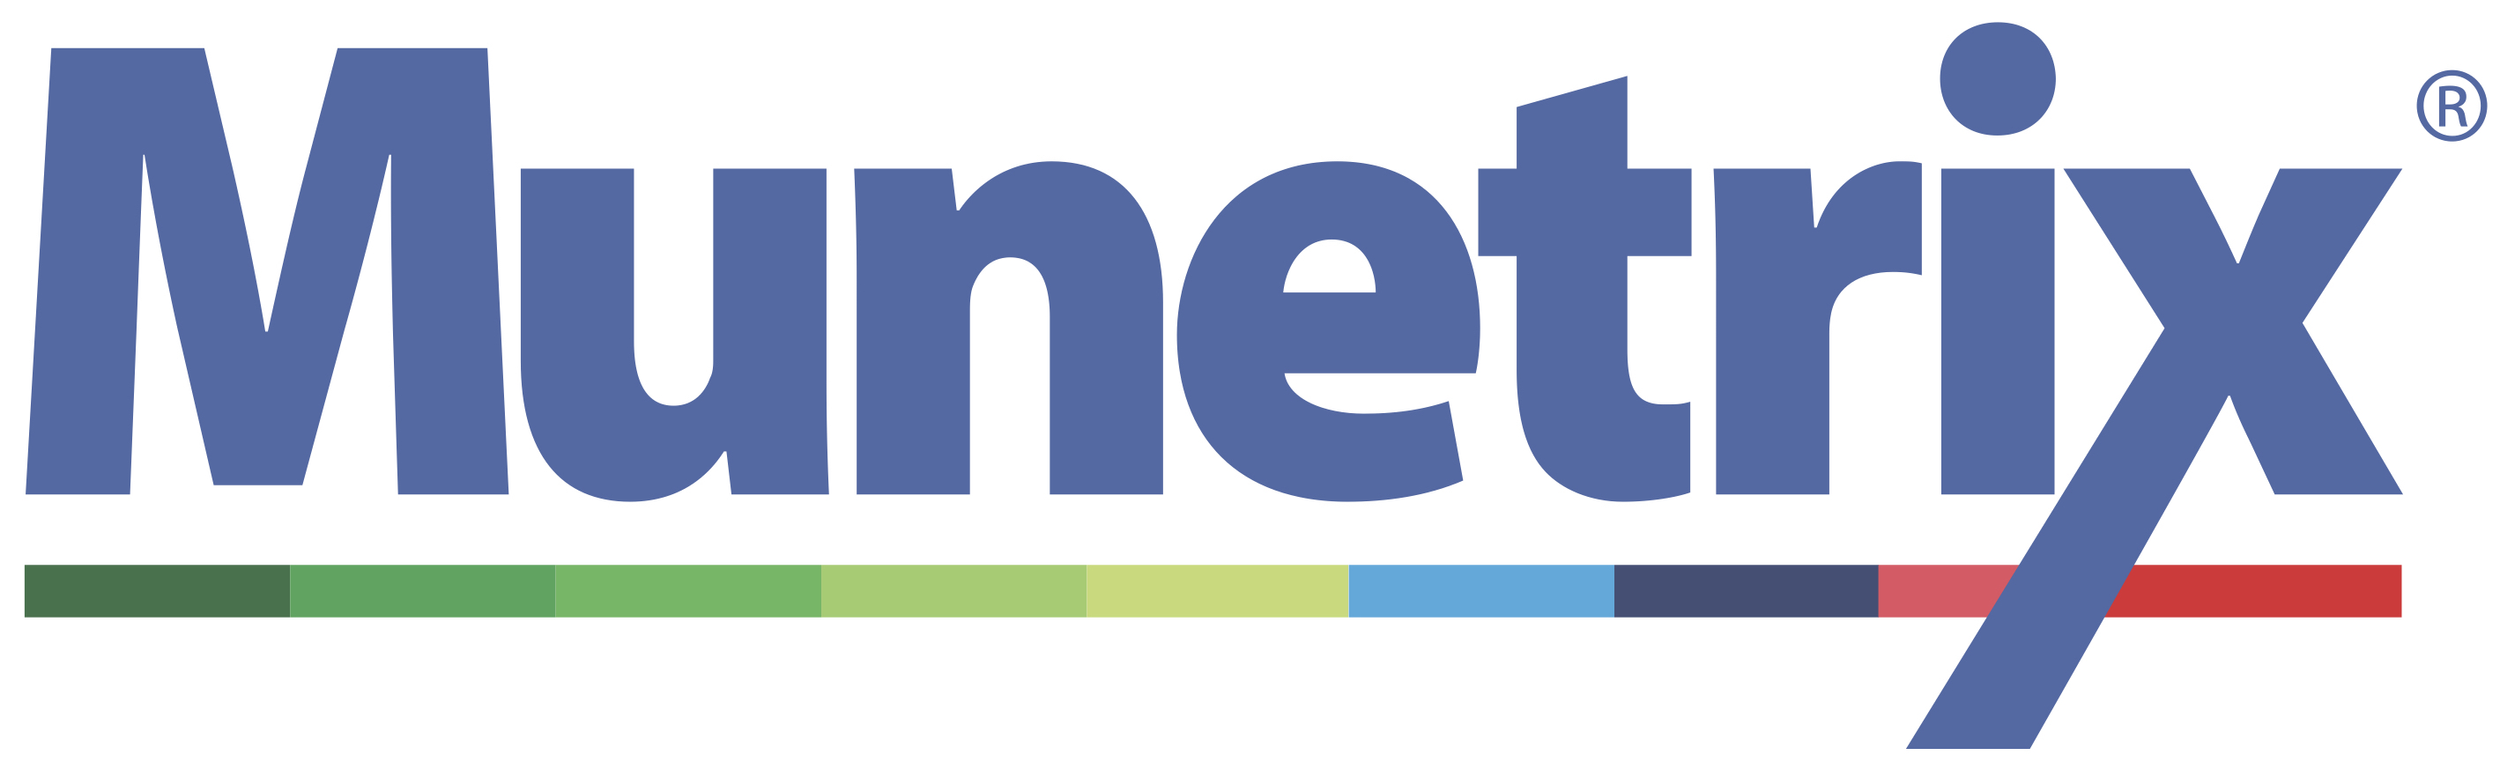 munetrix-logo-auth (1).png